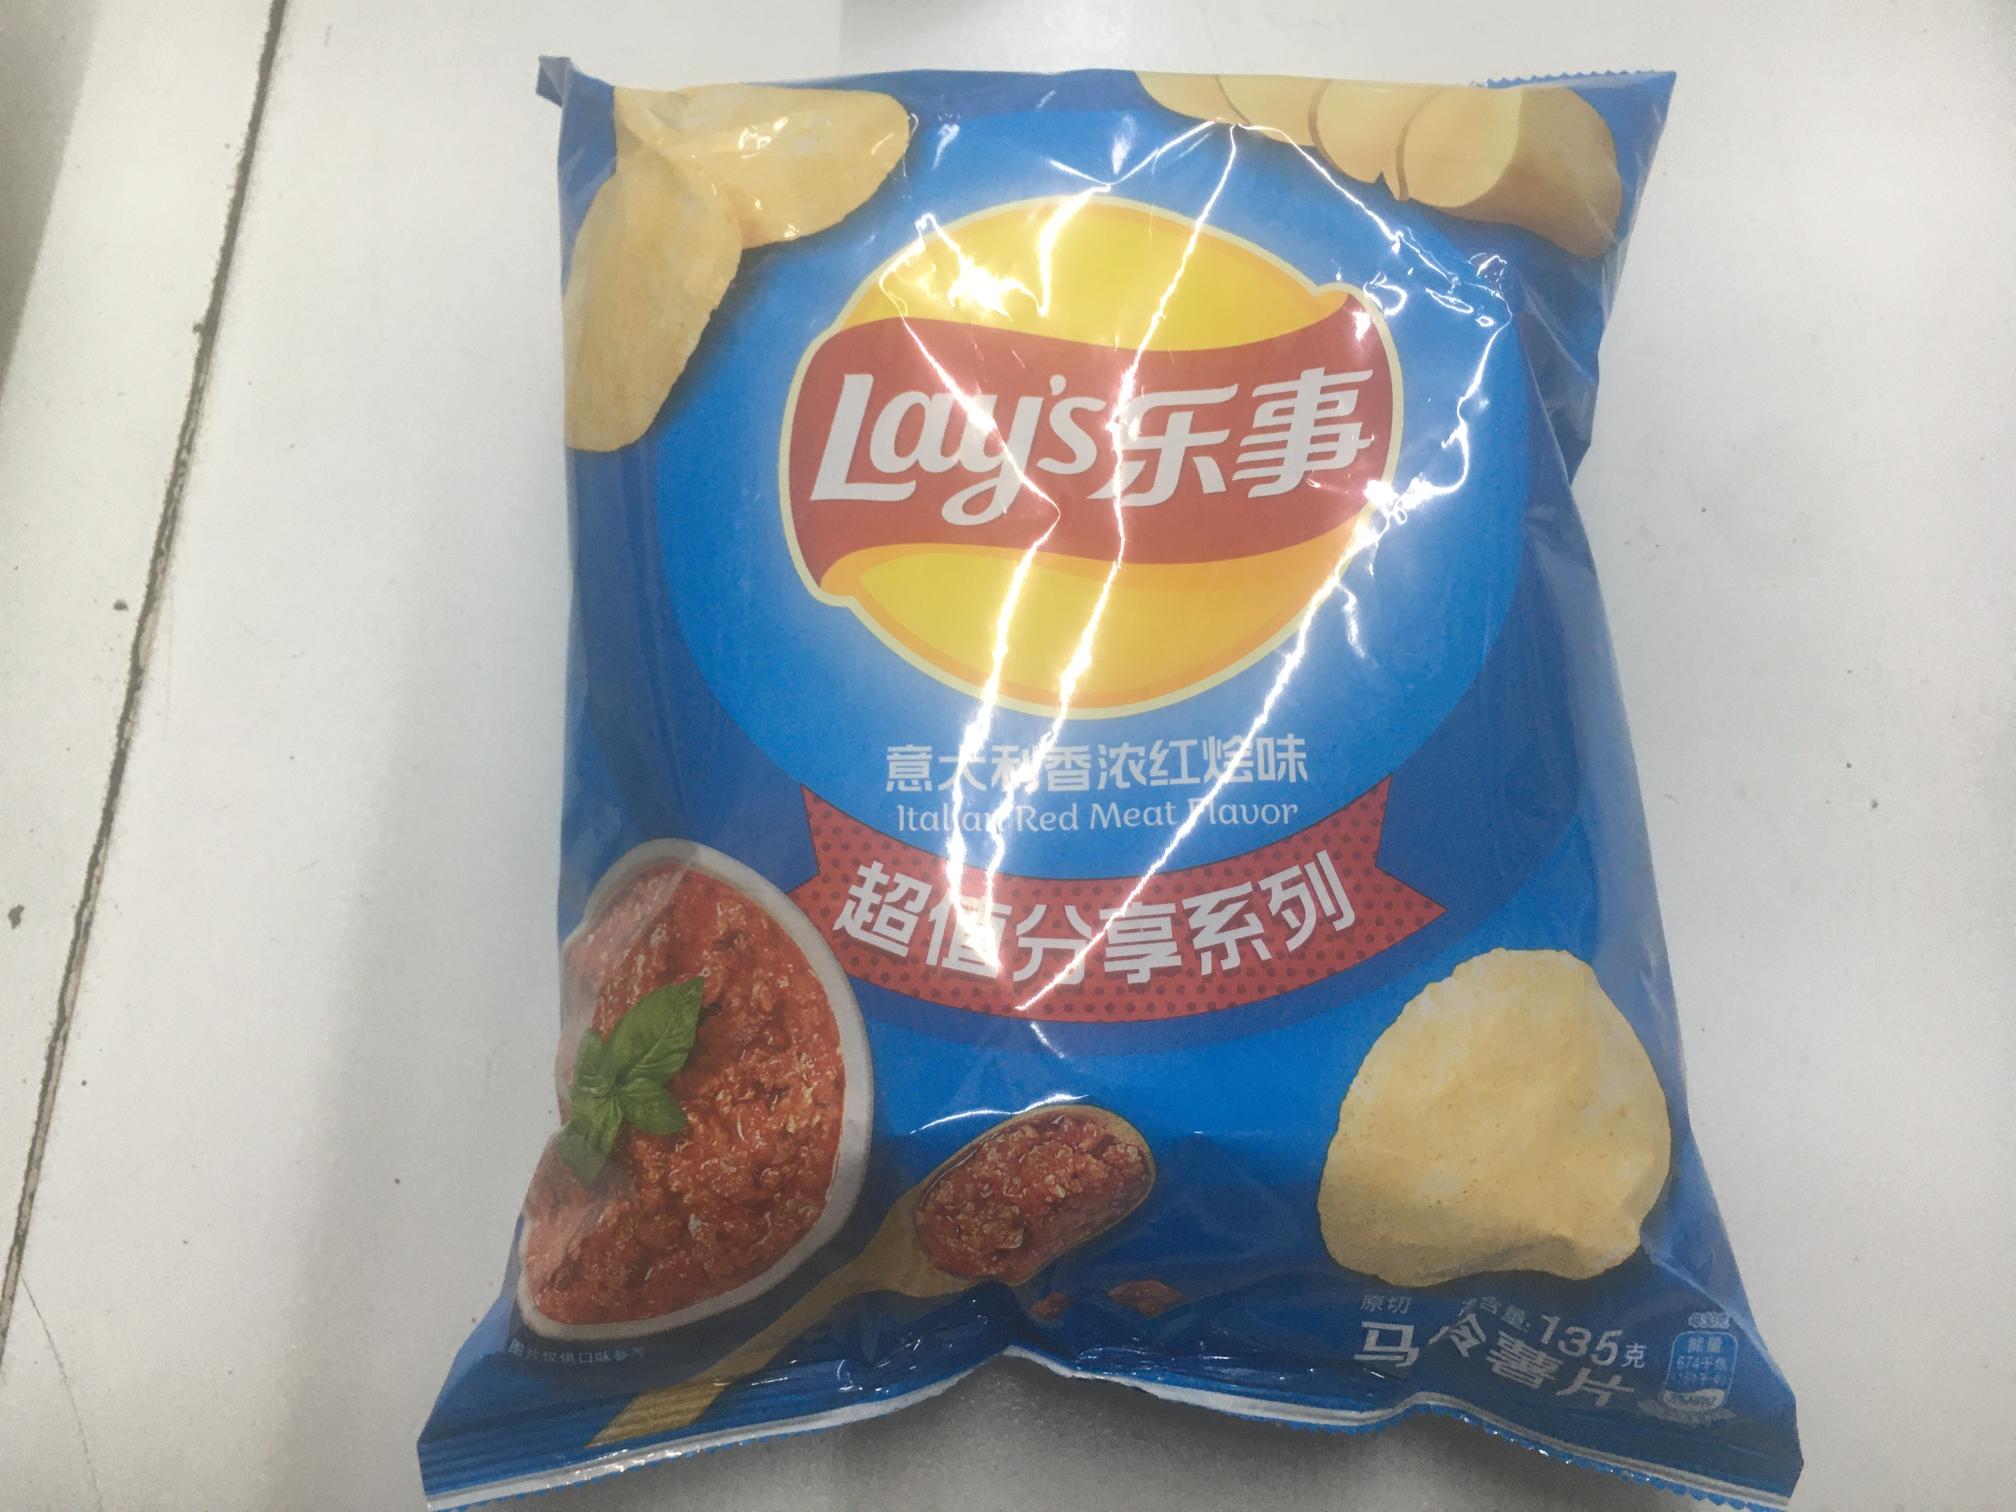 乐事薯片意大利香浓红烩味   135g